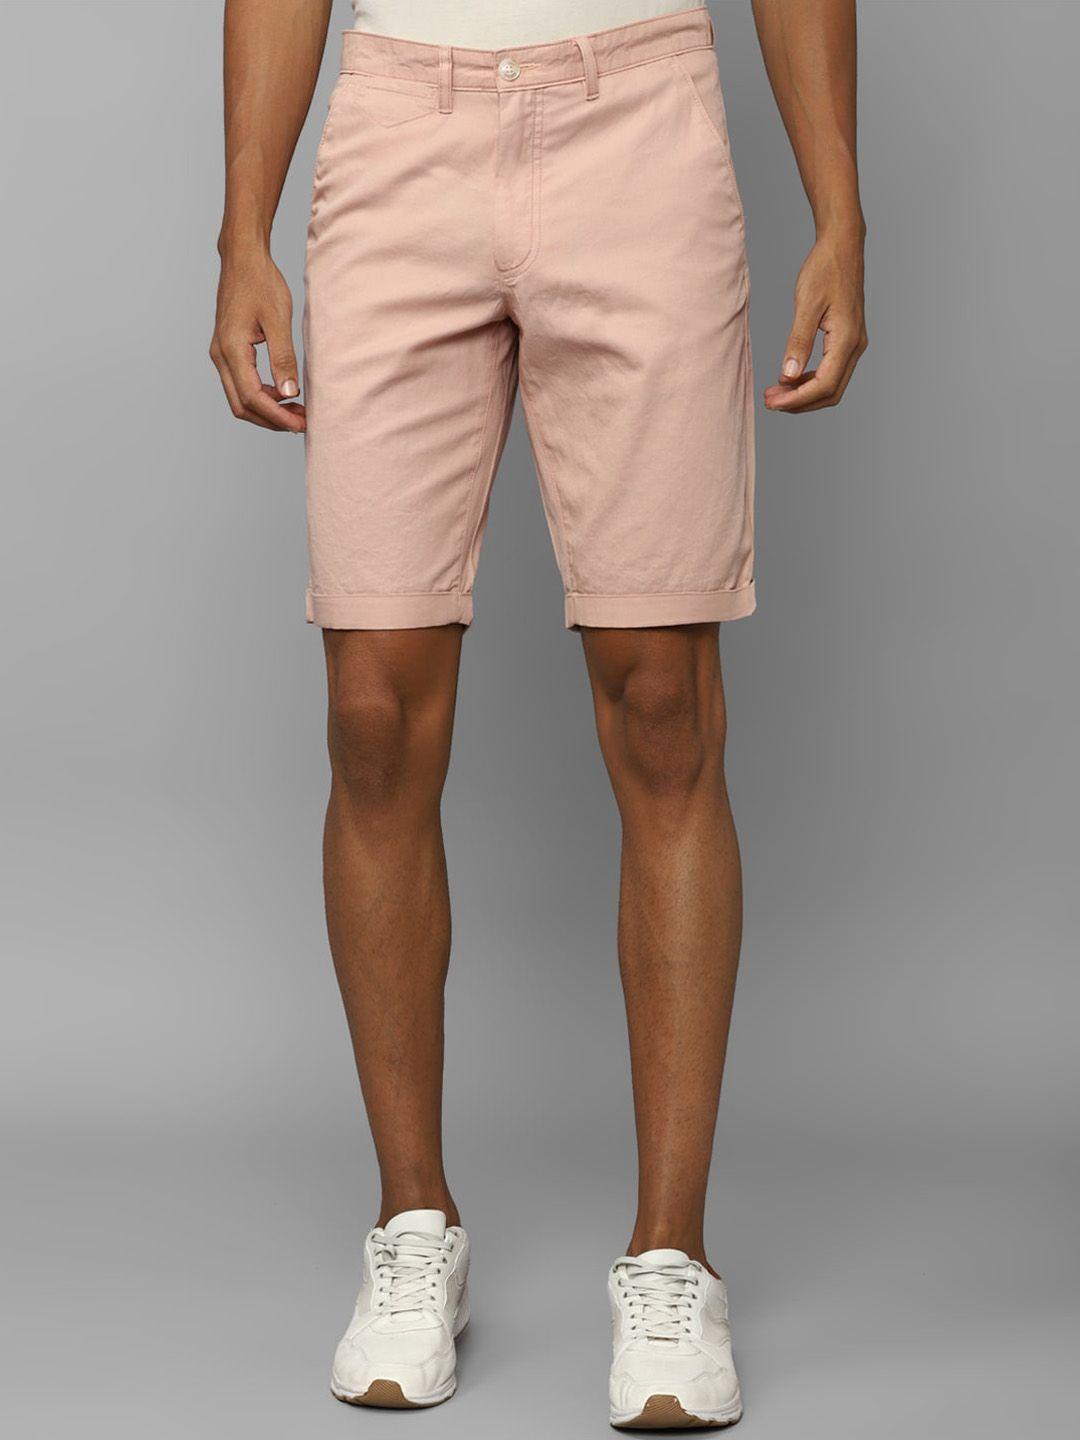 allen-solly-men-slim-fit-mid-rise-pure-cotton-shorts